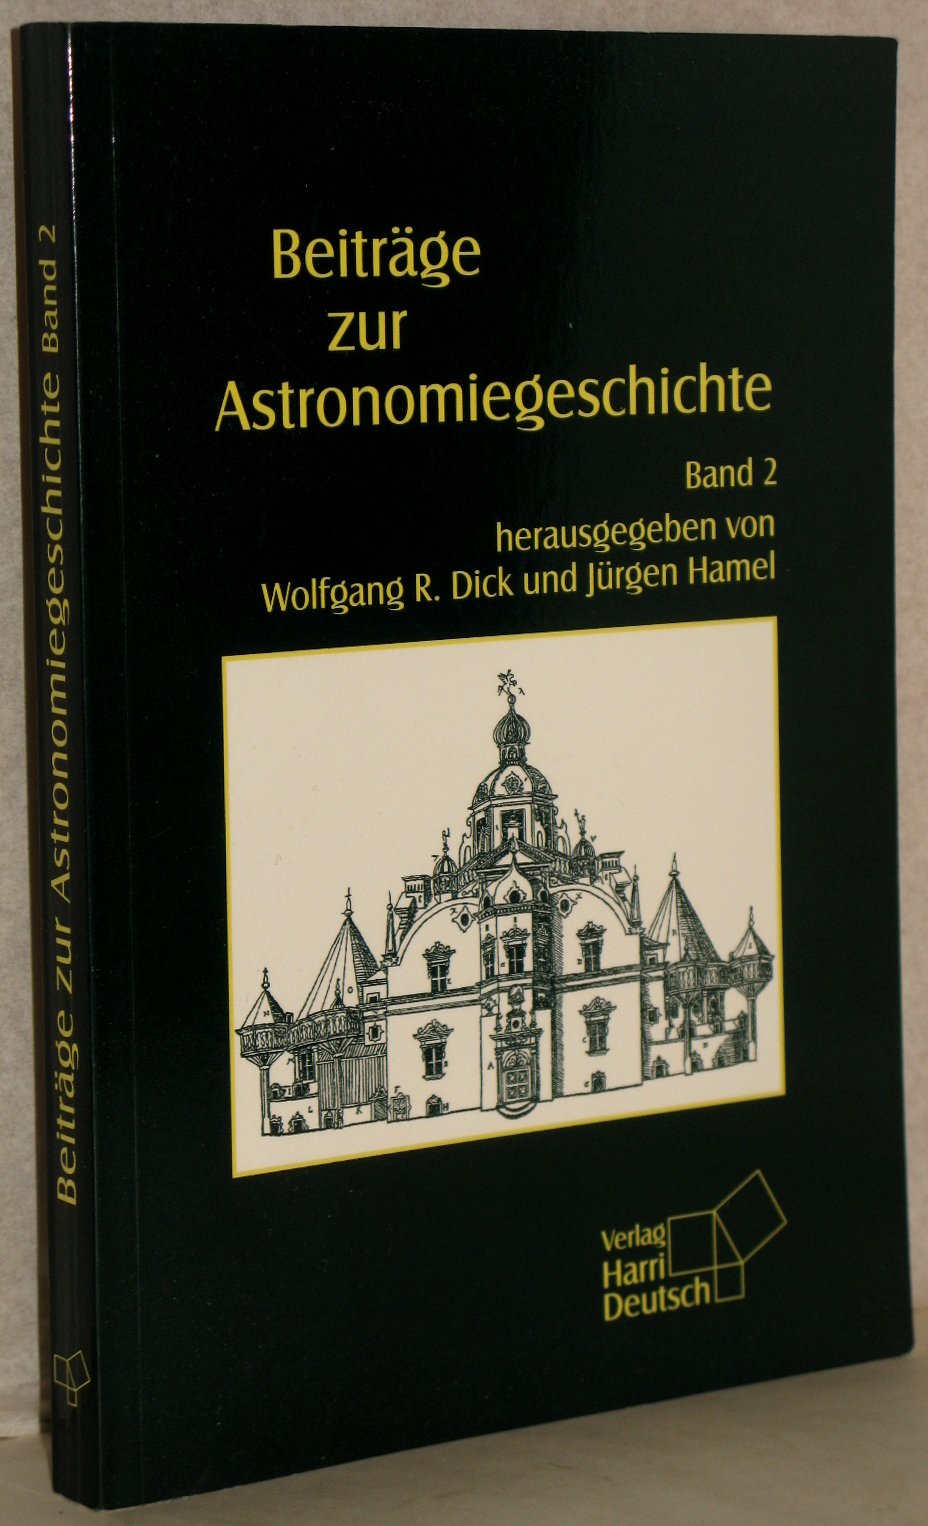 Beiträge zur Astronomiegeschichte. Band 2. - Dick, Wolfgang R. u. Jürgen Hamel (Hrsg.)